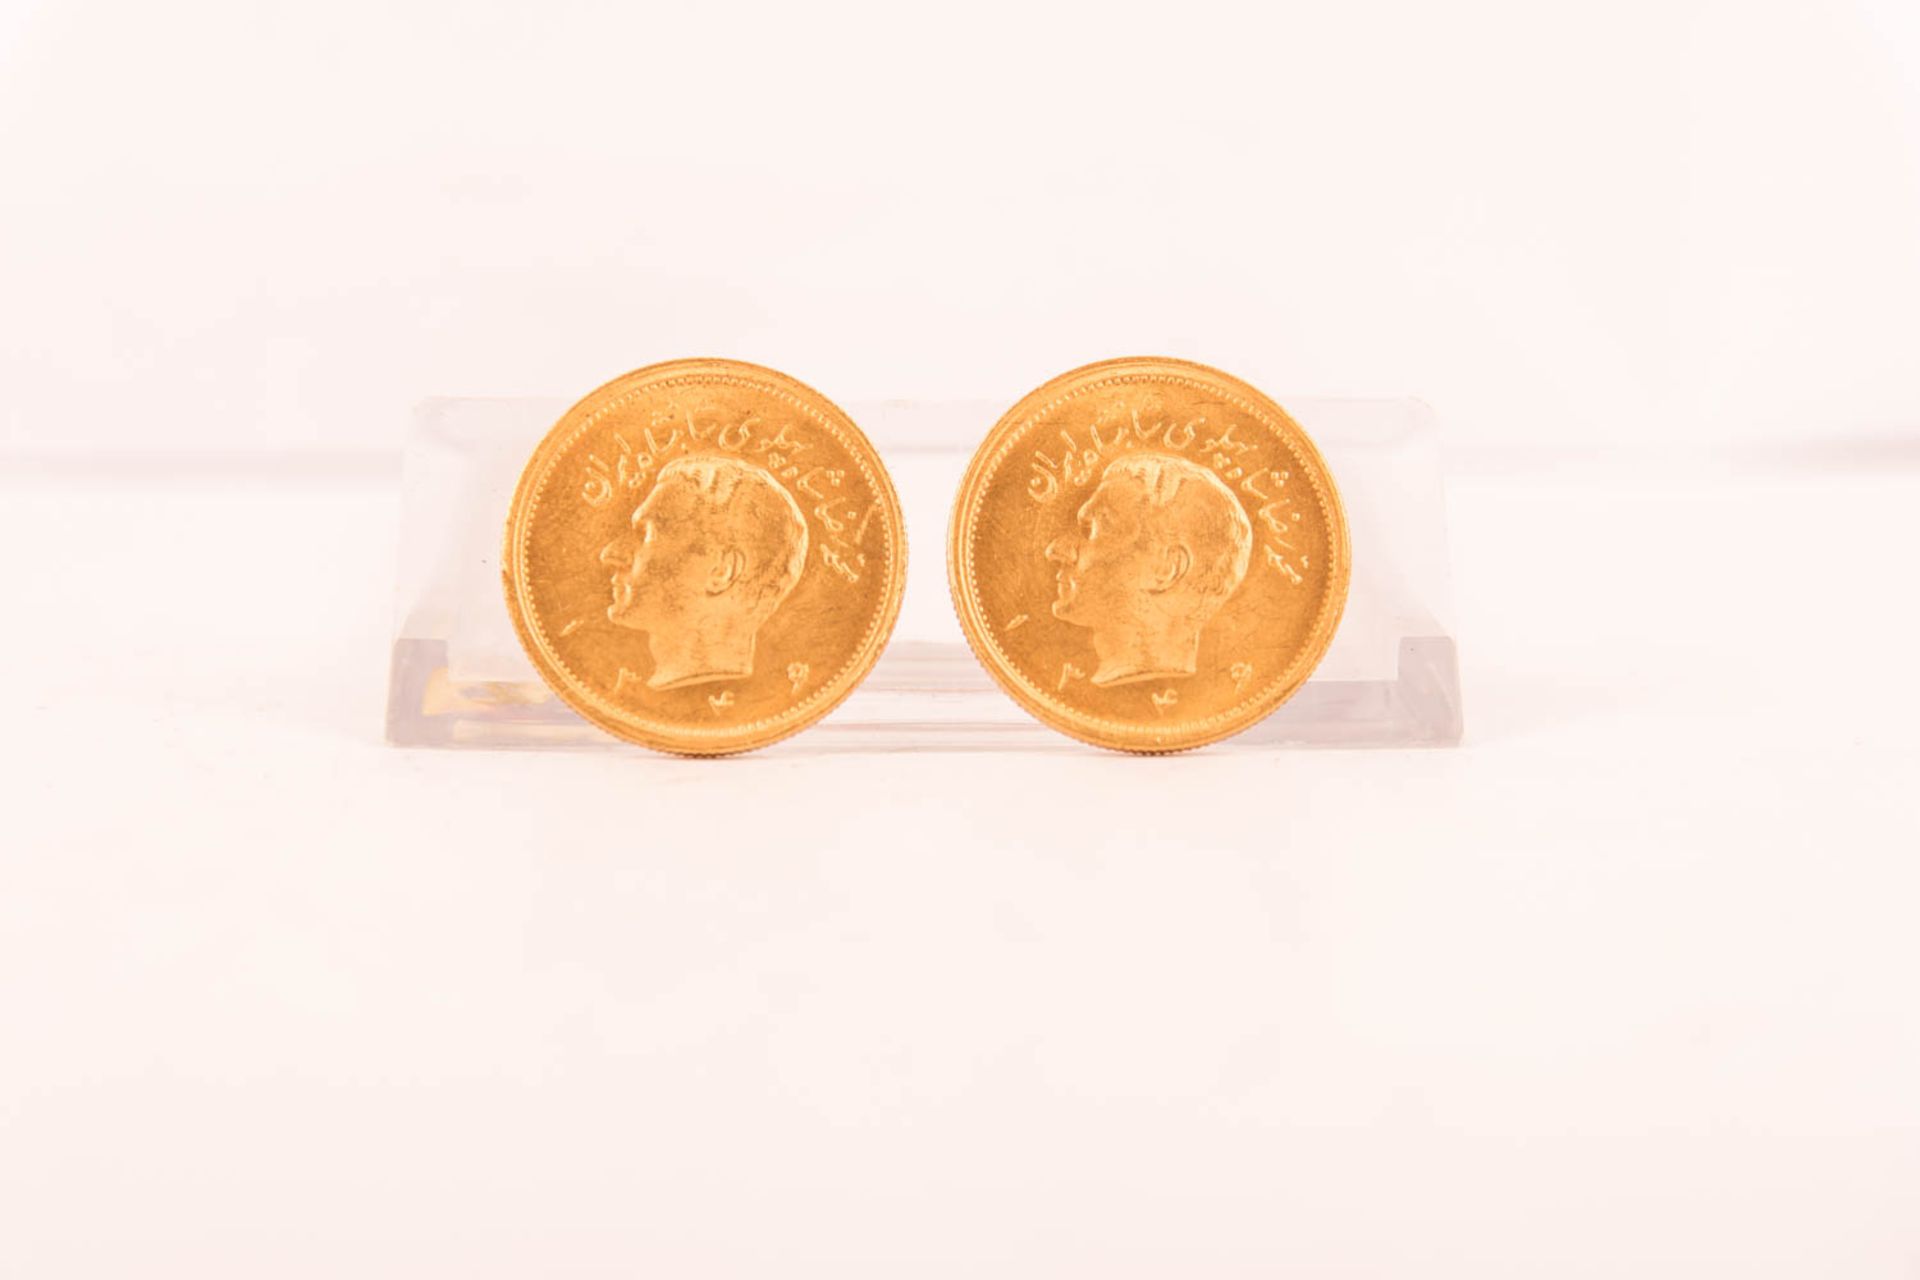 Iran 1 Pahlavi, zwei Goldmünzen - Bild 2 aus 3